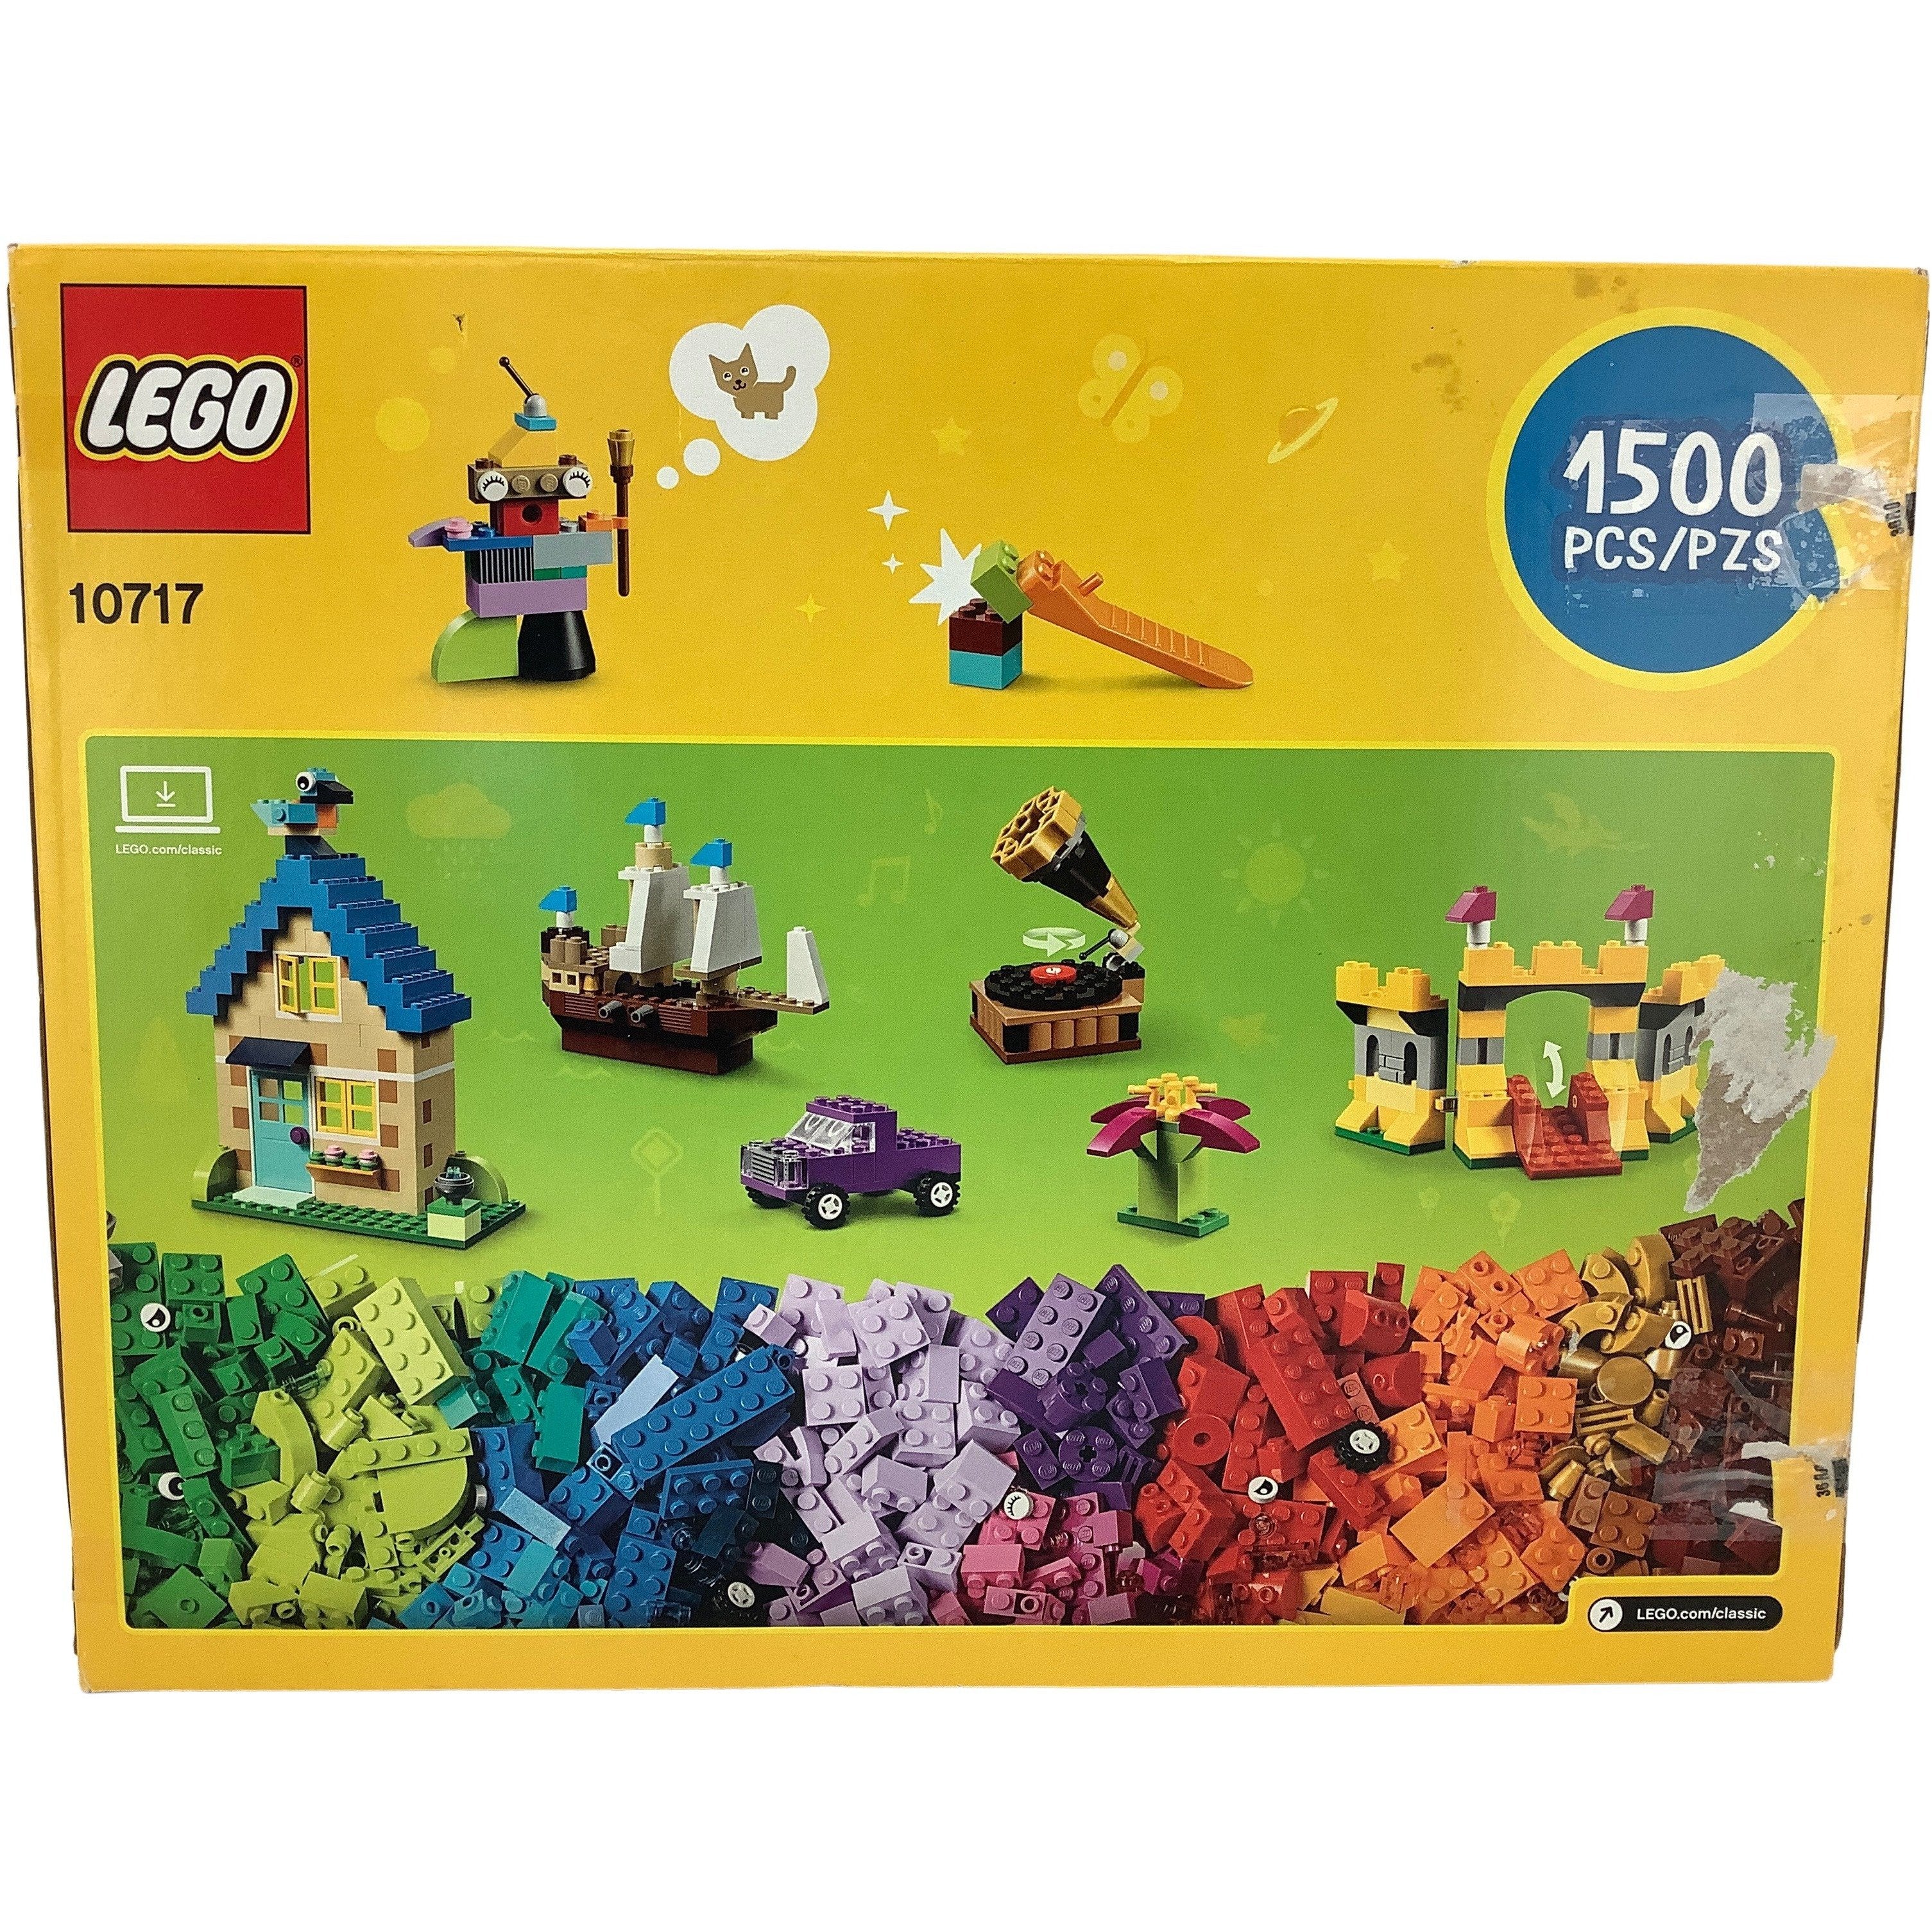 Lego Classics Building Bricks / 10717 / 1500 Pieces **DEALS**